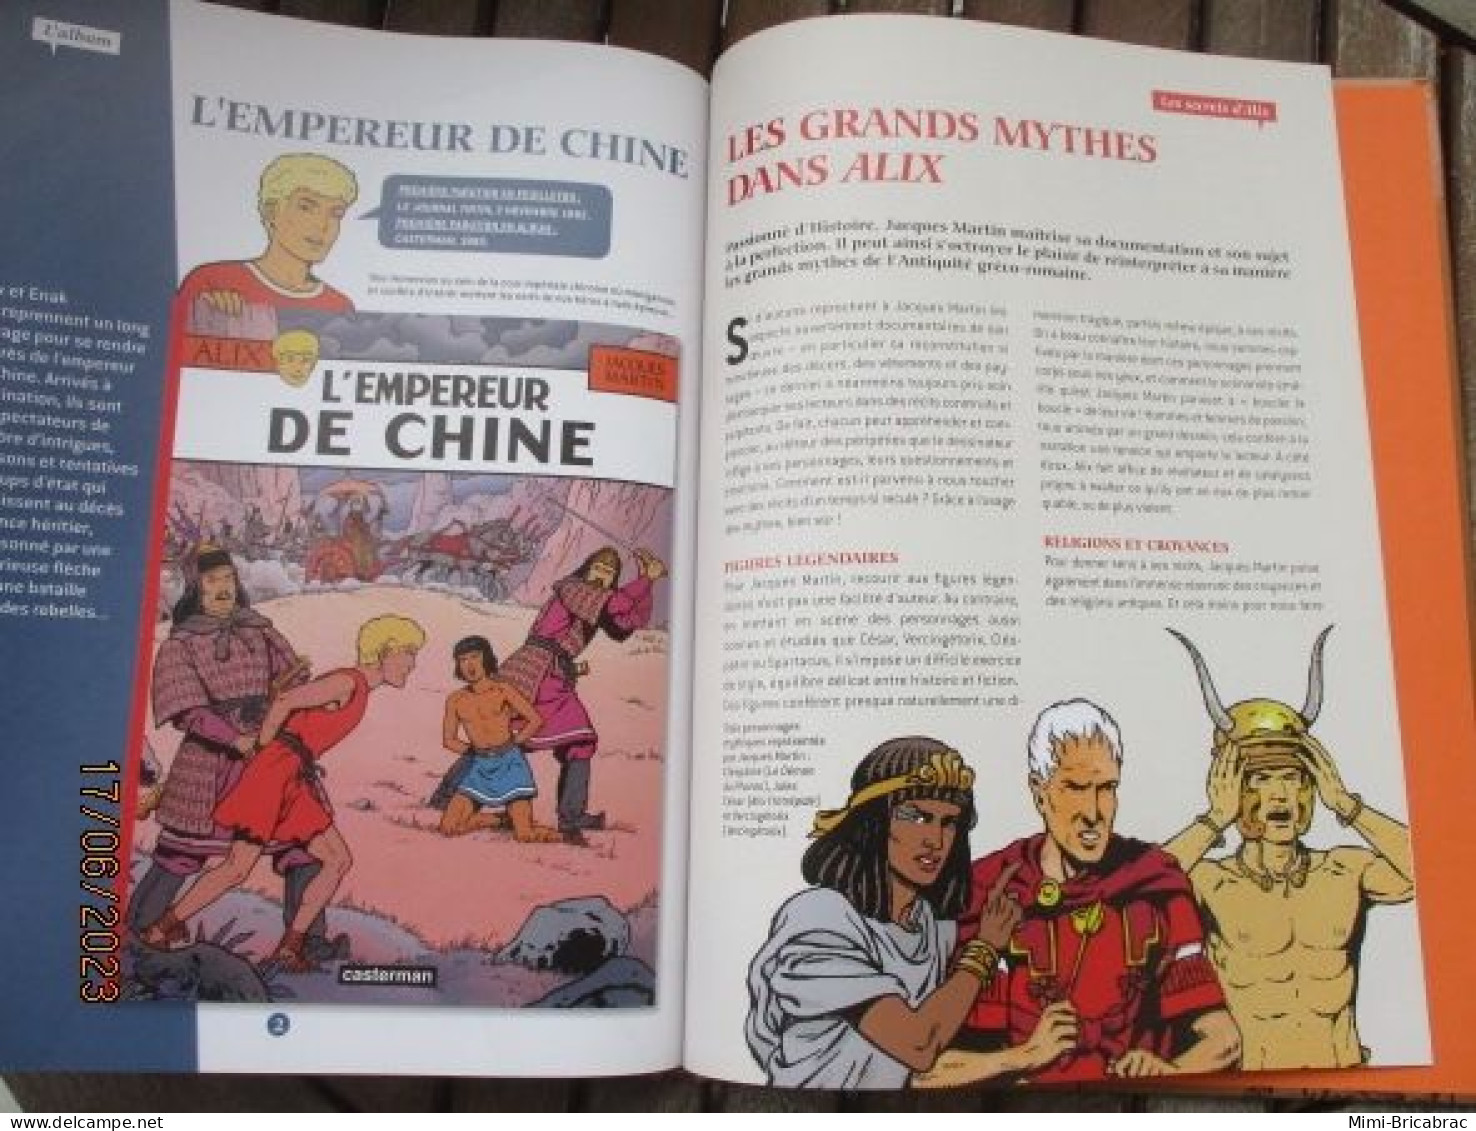 BD518 / BD ALIX / L'EMPEREUR DE CHINE en excellent état , édition de 2012 , valait 7,99€, avec suppl LE MONDE D'ALIX